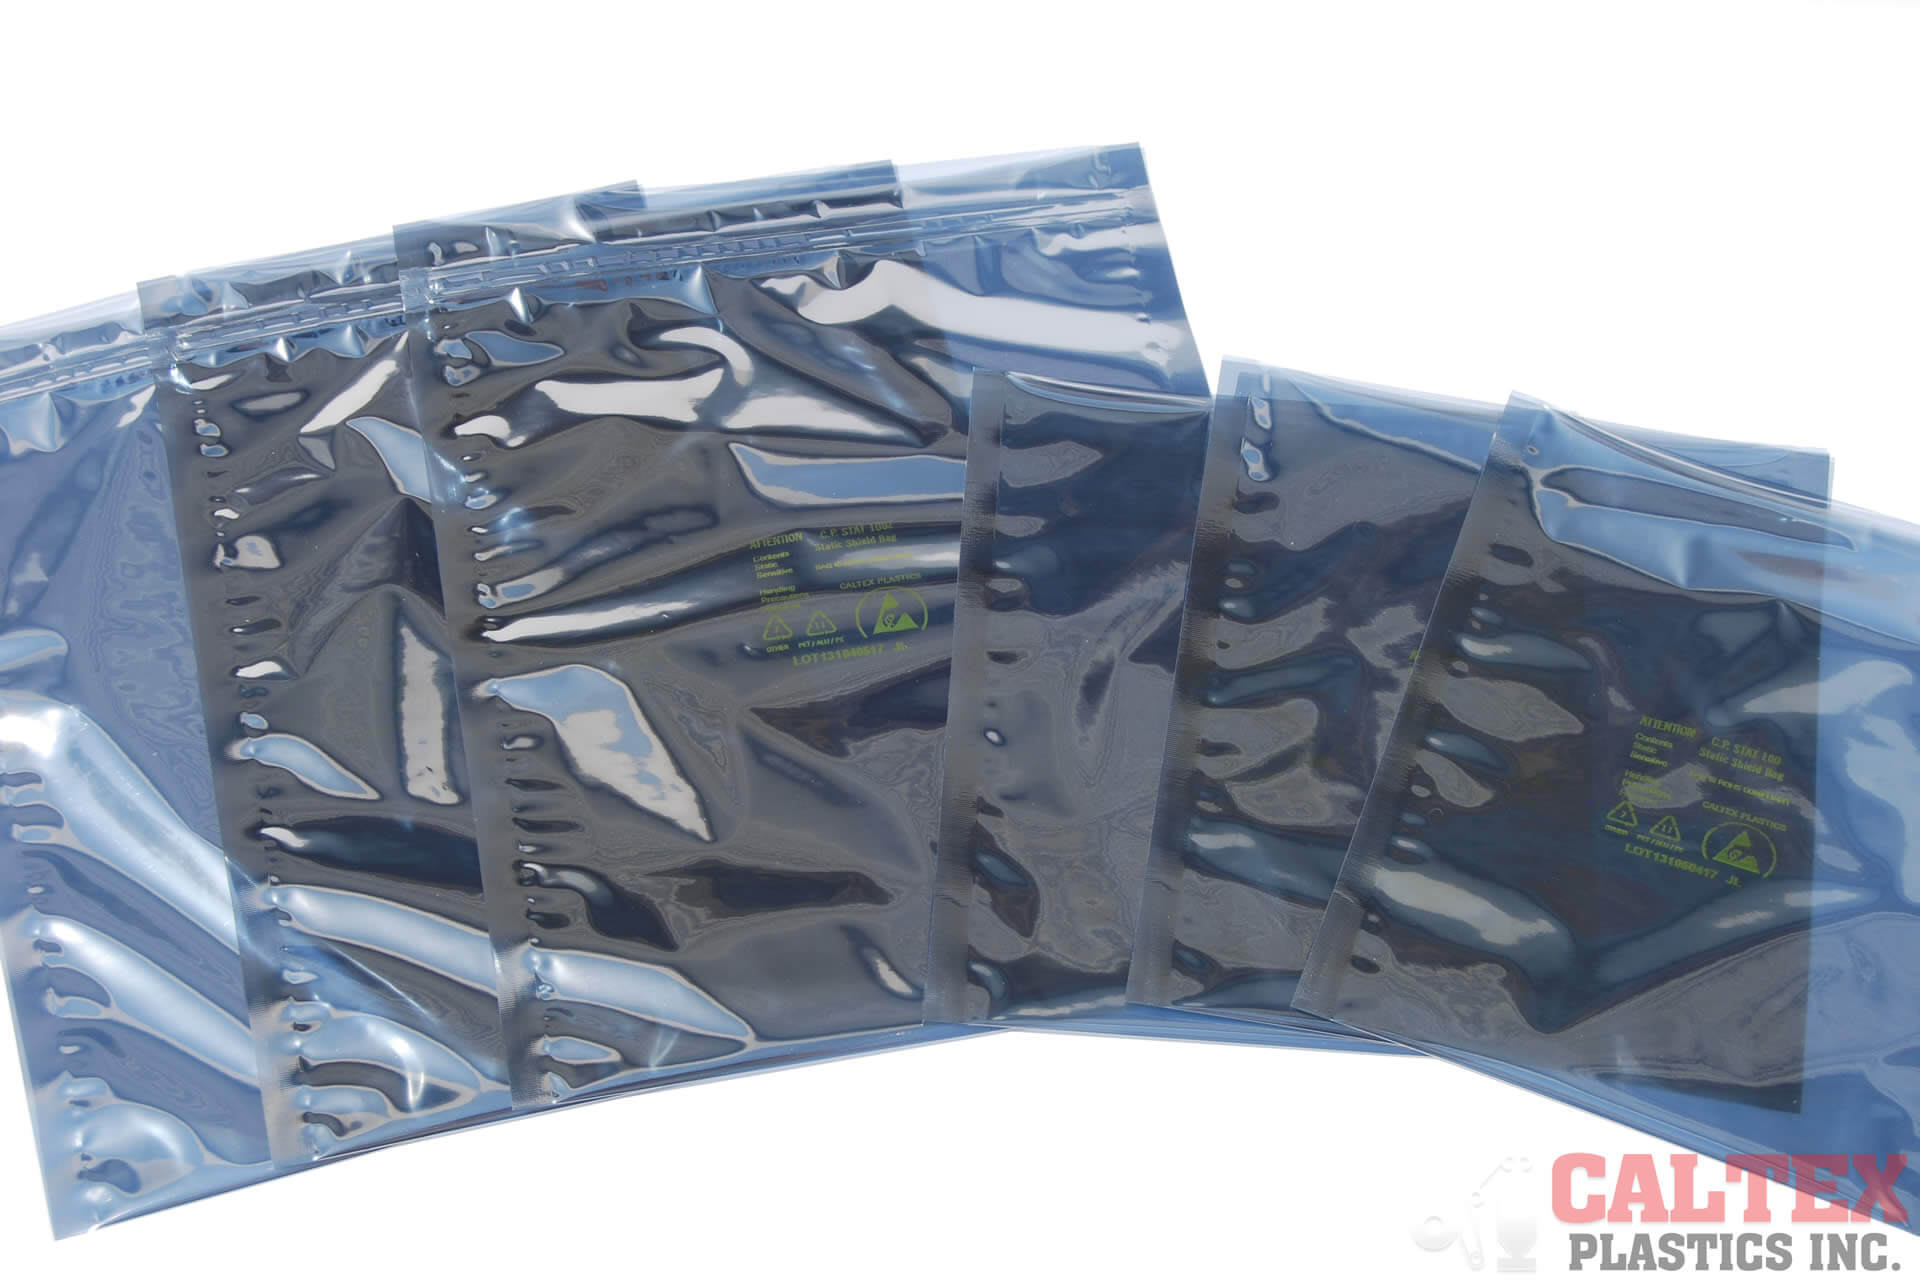 Buy Static Shielding Zipper Bags, Metallic, 3x5, ESD Shield